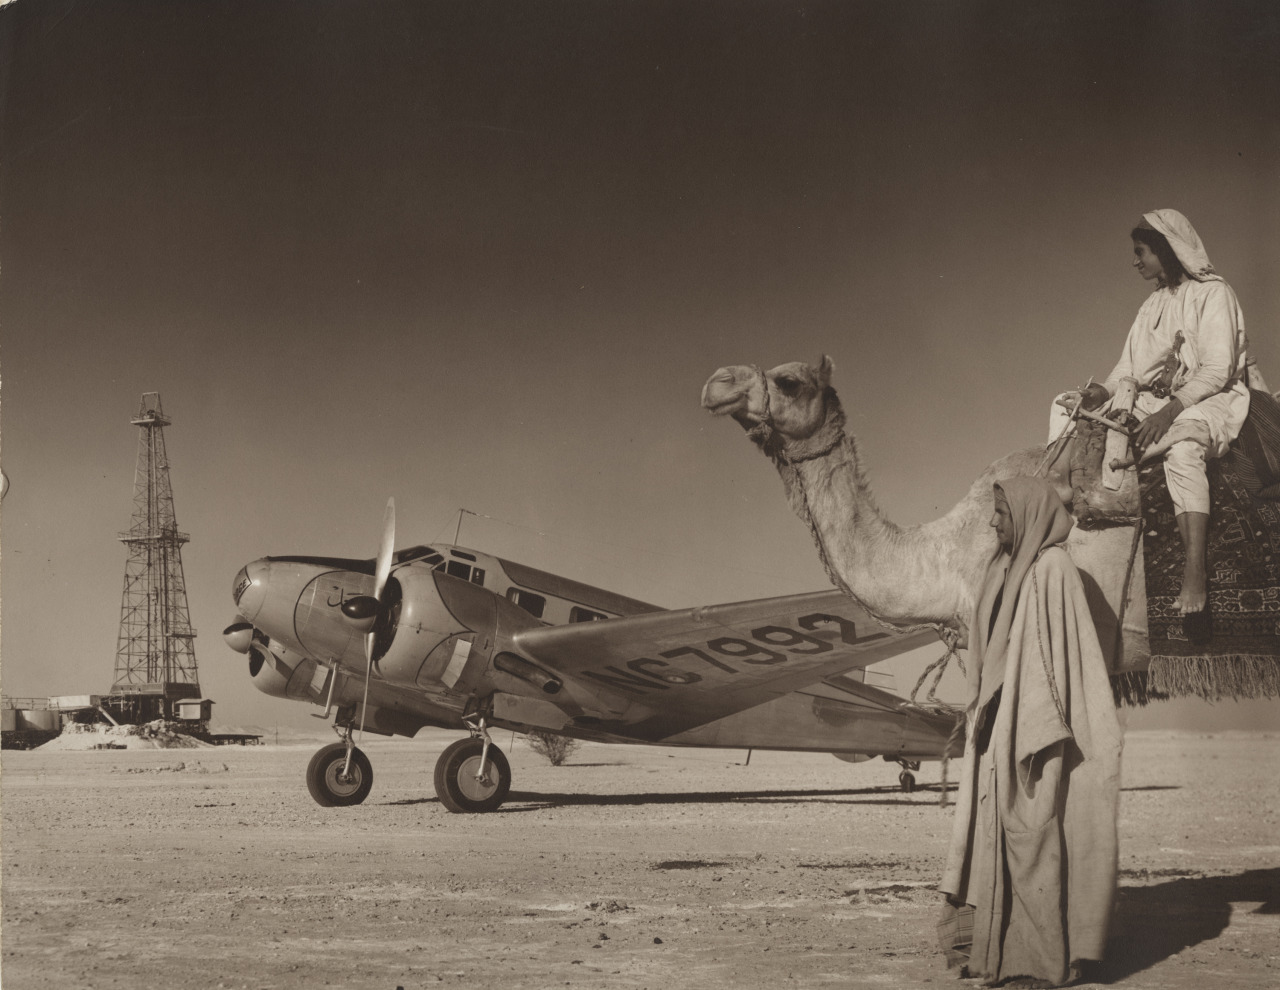 1940s photo of Saudi Arabia